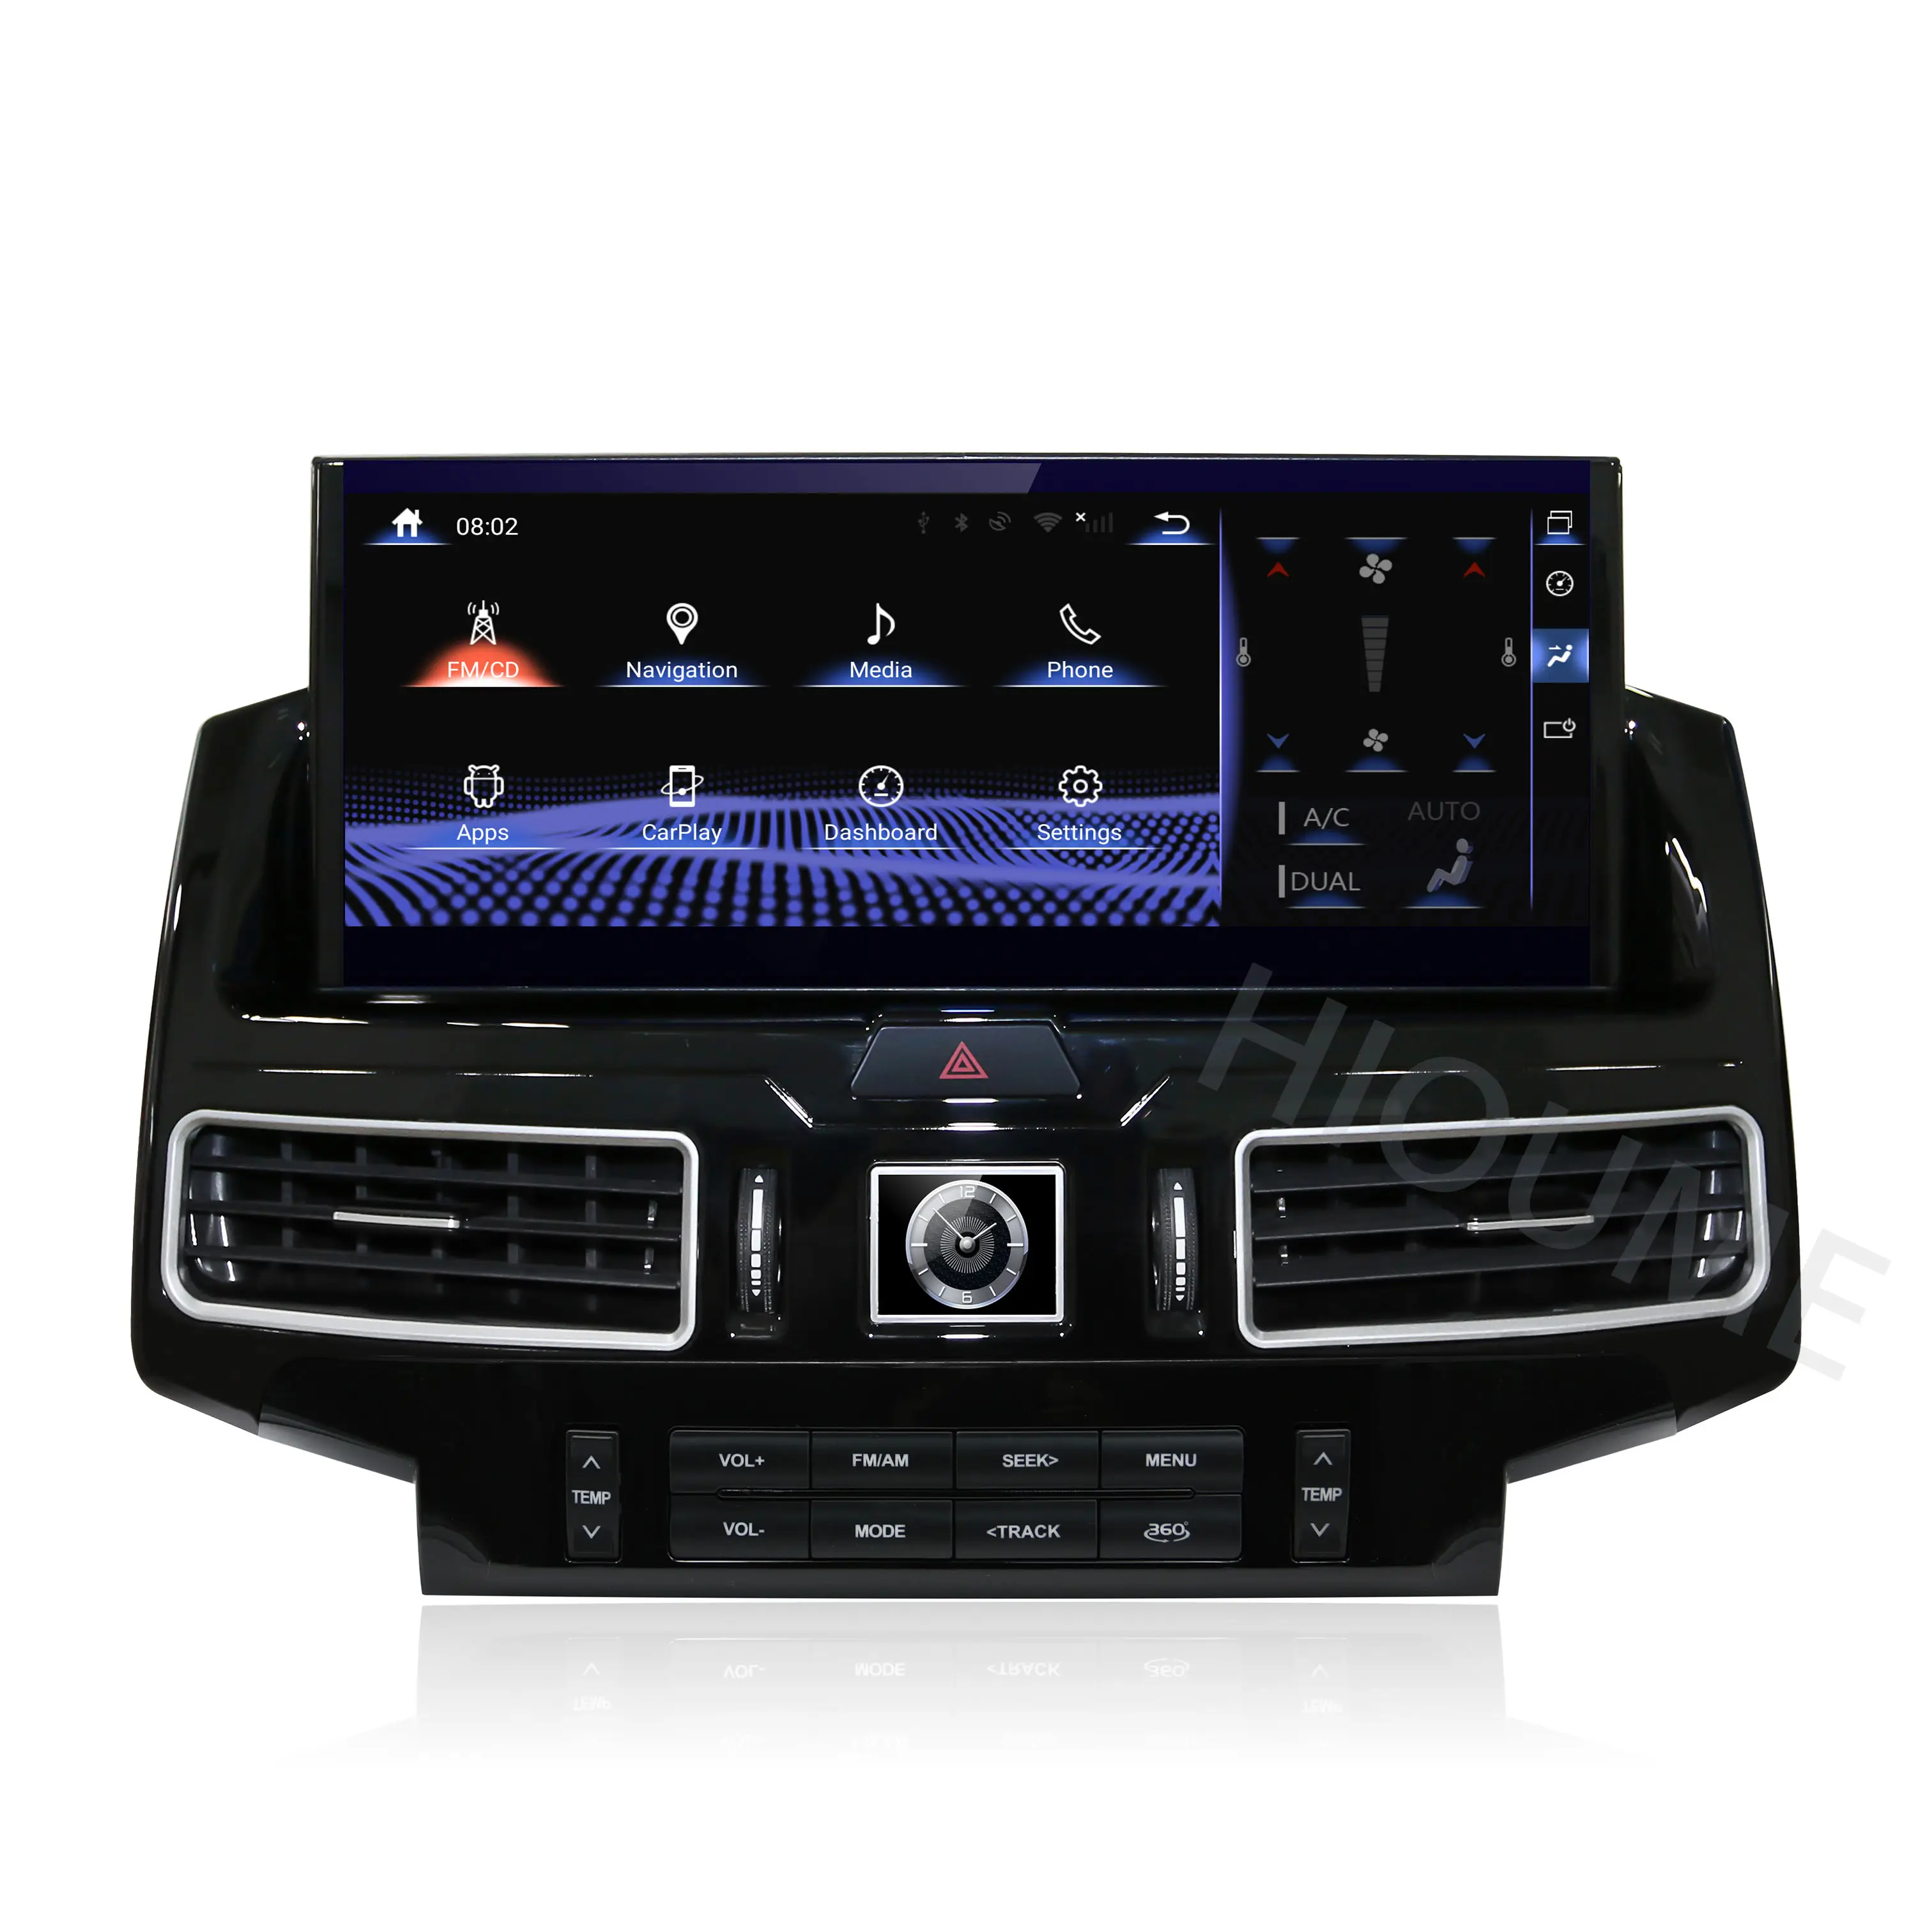 12.5 "Android 11 parlama önleyici Android araba radyo TOYOTA LAND CRUISER 200 için LC200 2007- 2020 GPS navigasyon DVD multimedya oynatıcı